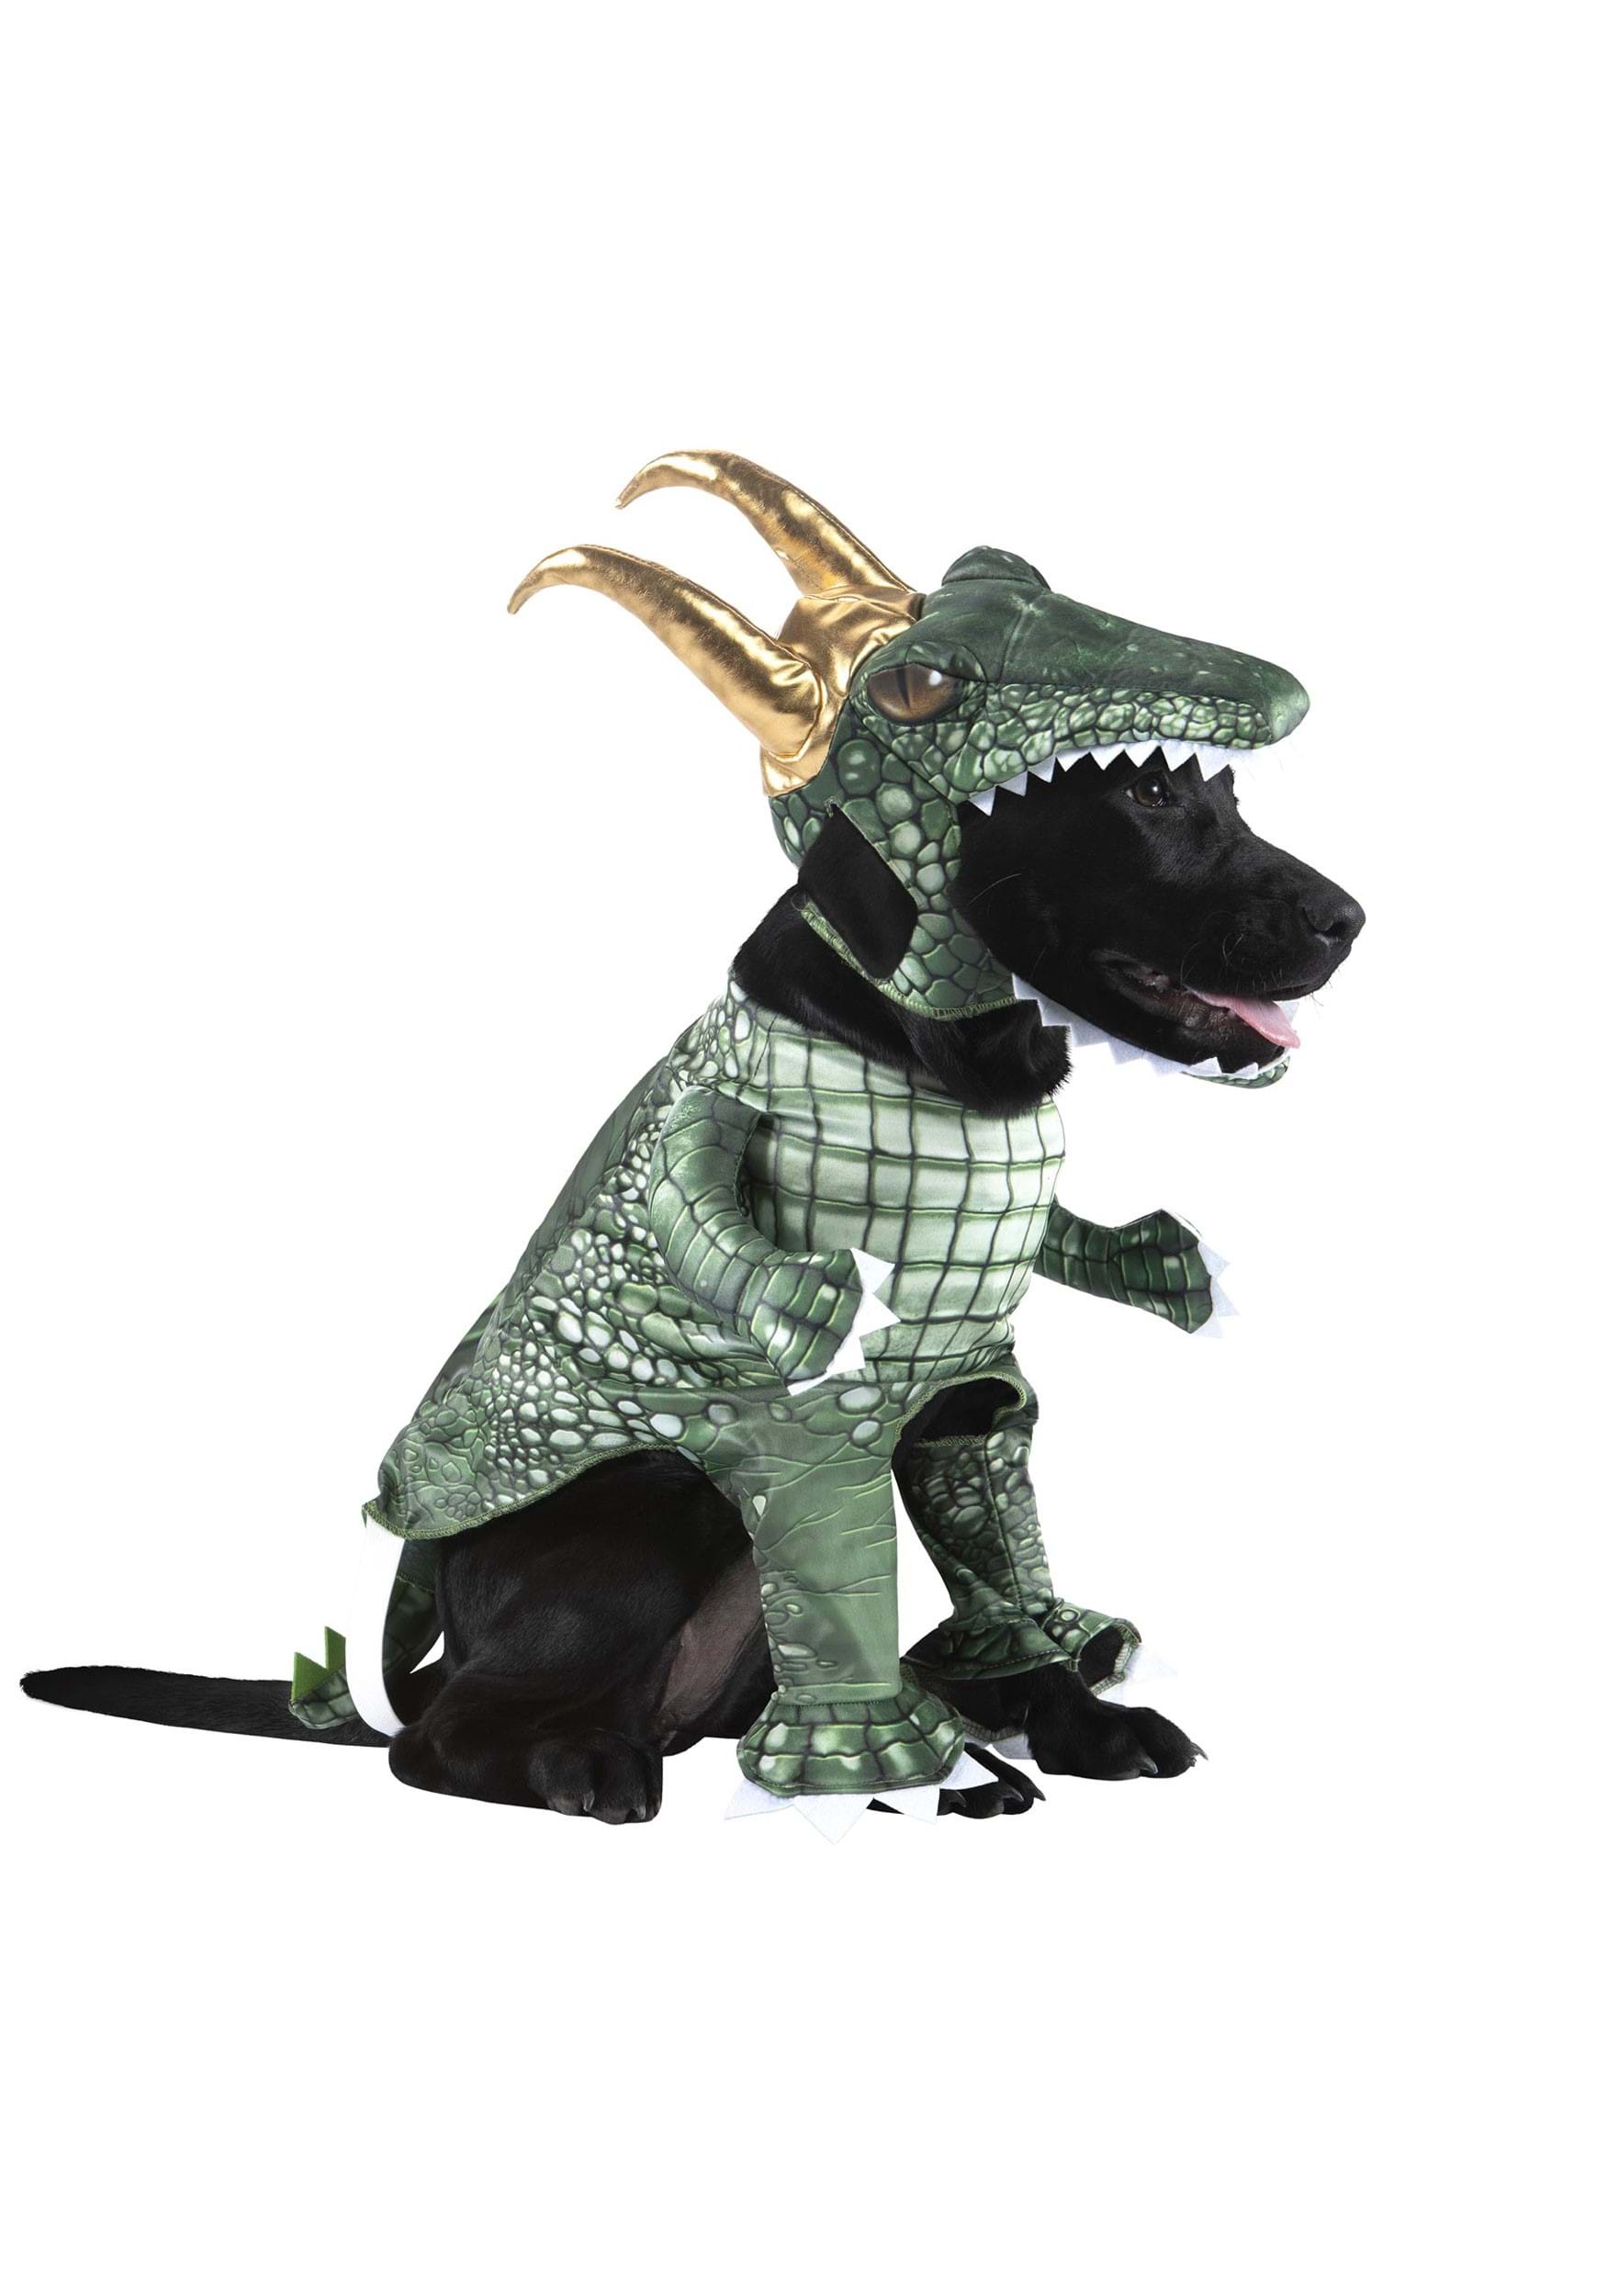 Loki Alligator Variant Dog Costume